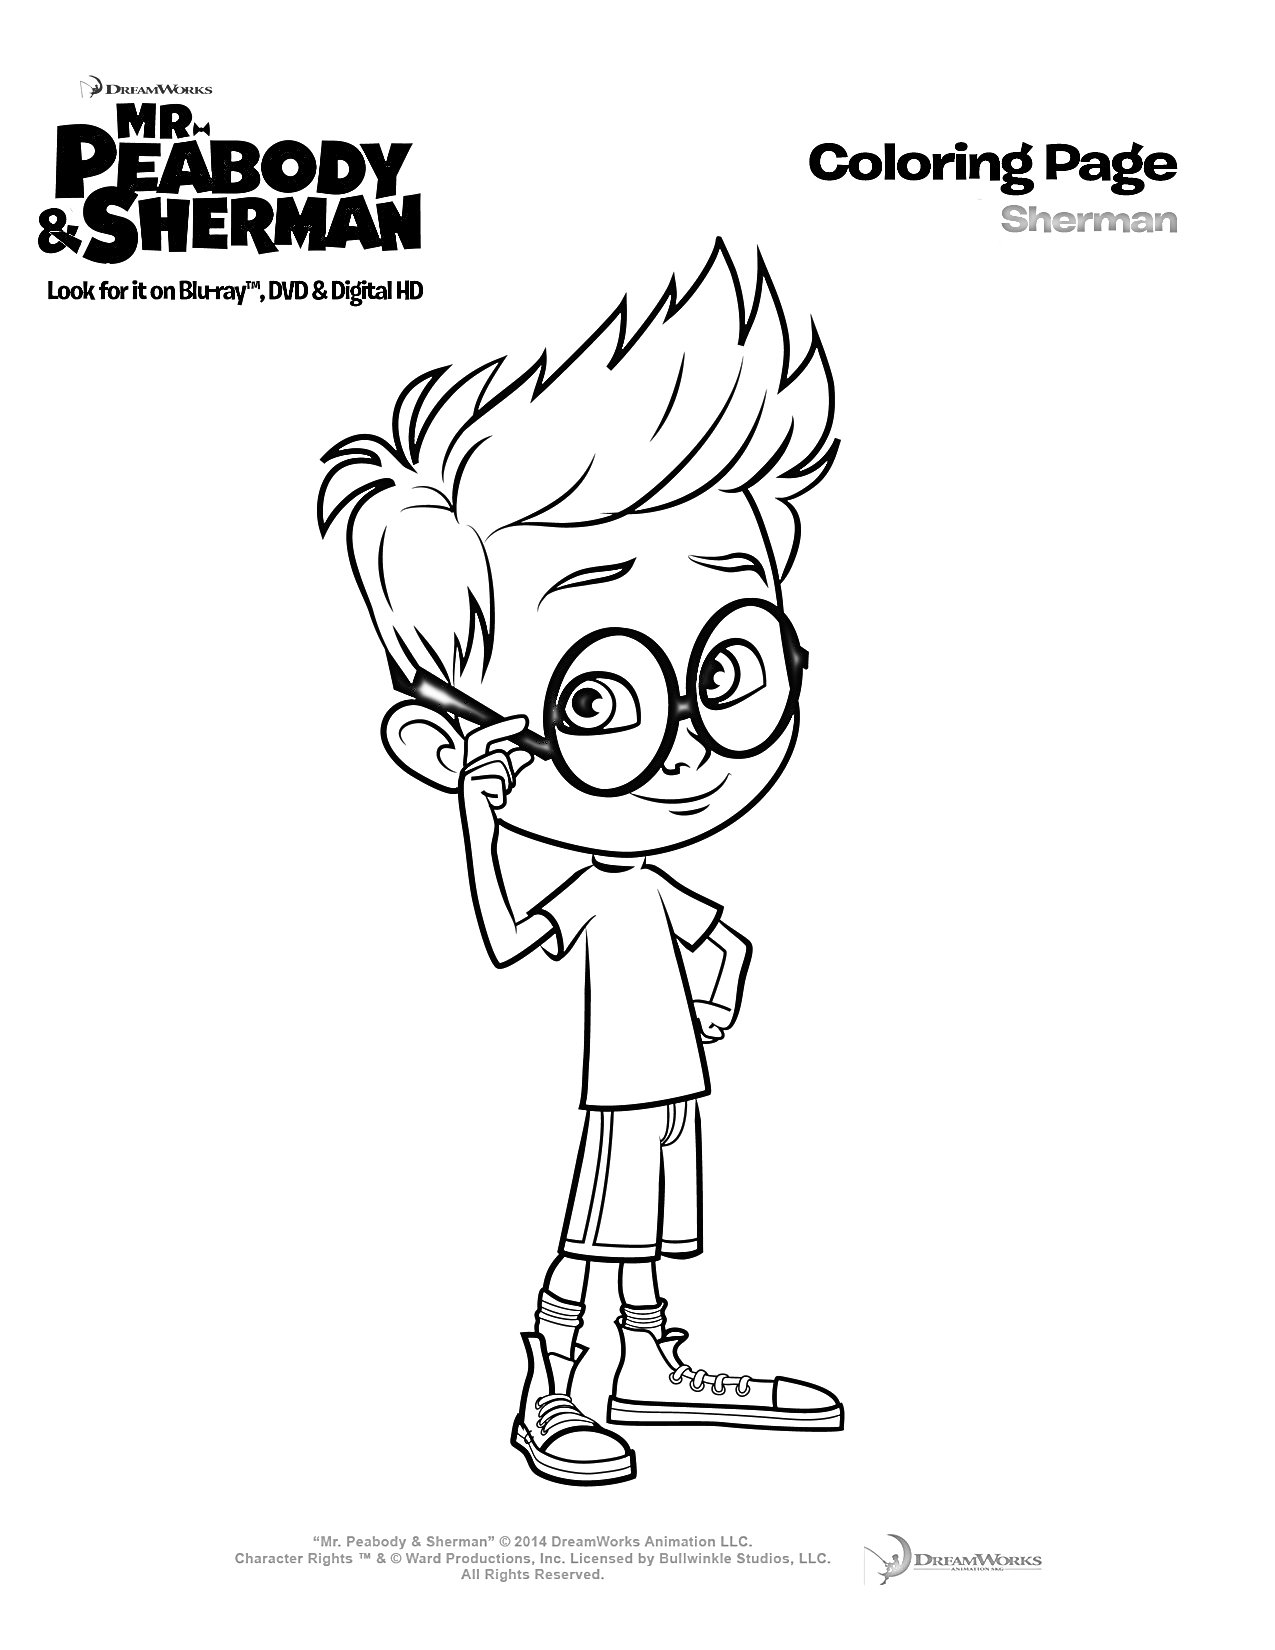 Мистер Пибоди и Шерман - раскраска с Шерманом, мальчик в очках и кроссовках на одной ноге, стоит с поднятой рукой к щекам, надписи 